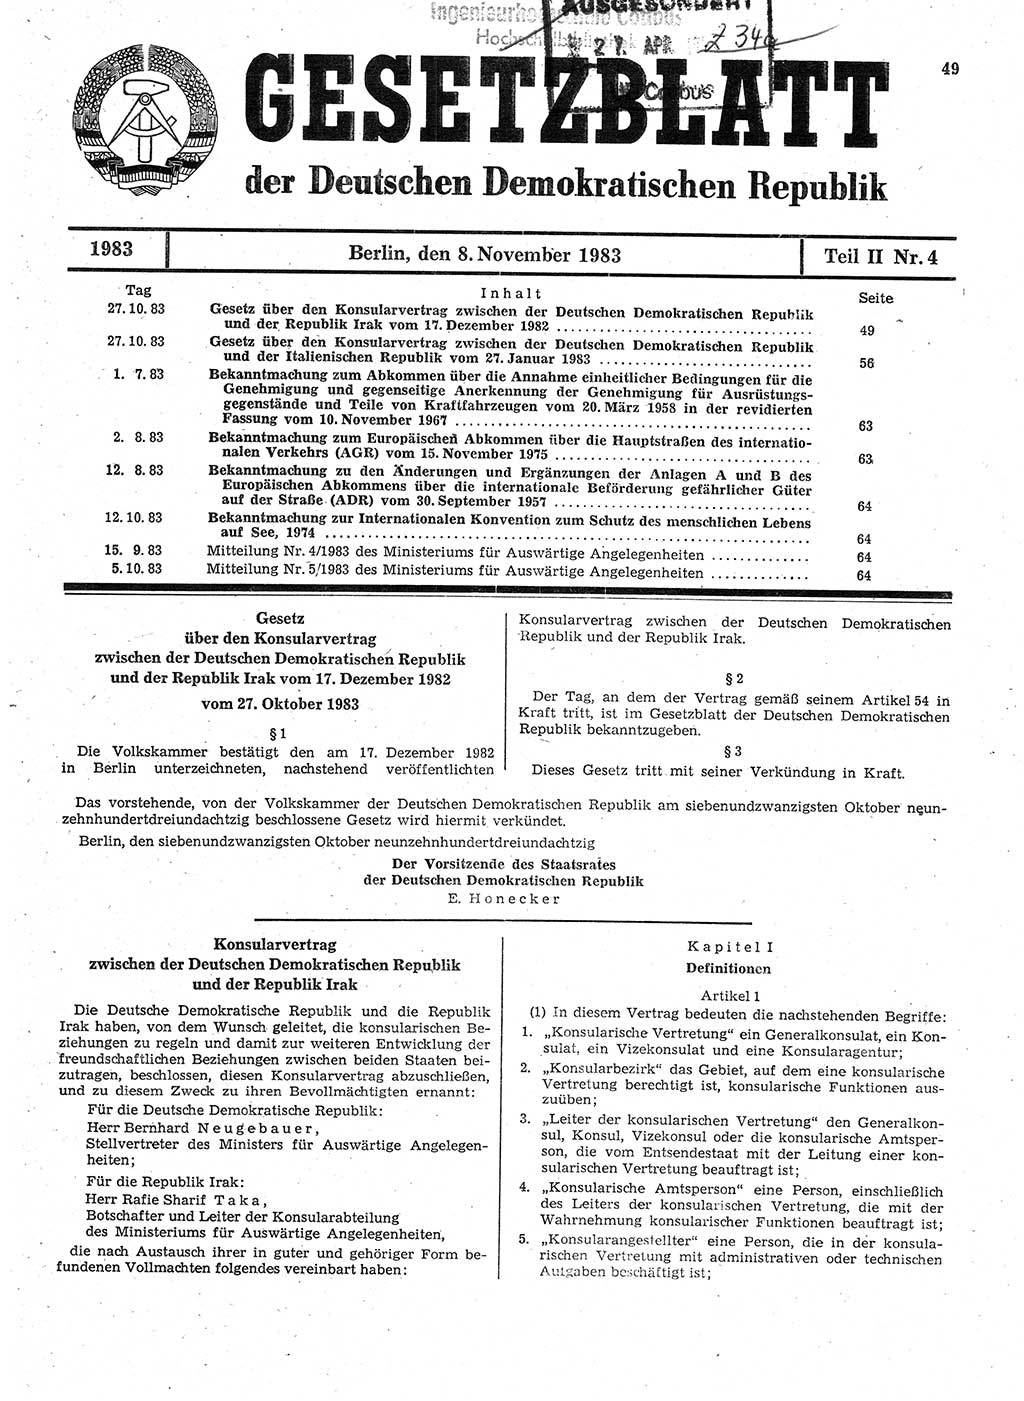 Gesetzblatt (GBl.) der Deutschen Demokratischen Republik (DDR) Teil ⅠⅠ 1983, Seite 49 (GBl. DDR ⅠⅠ 1983, S. 49)